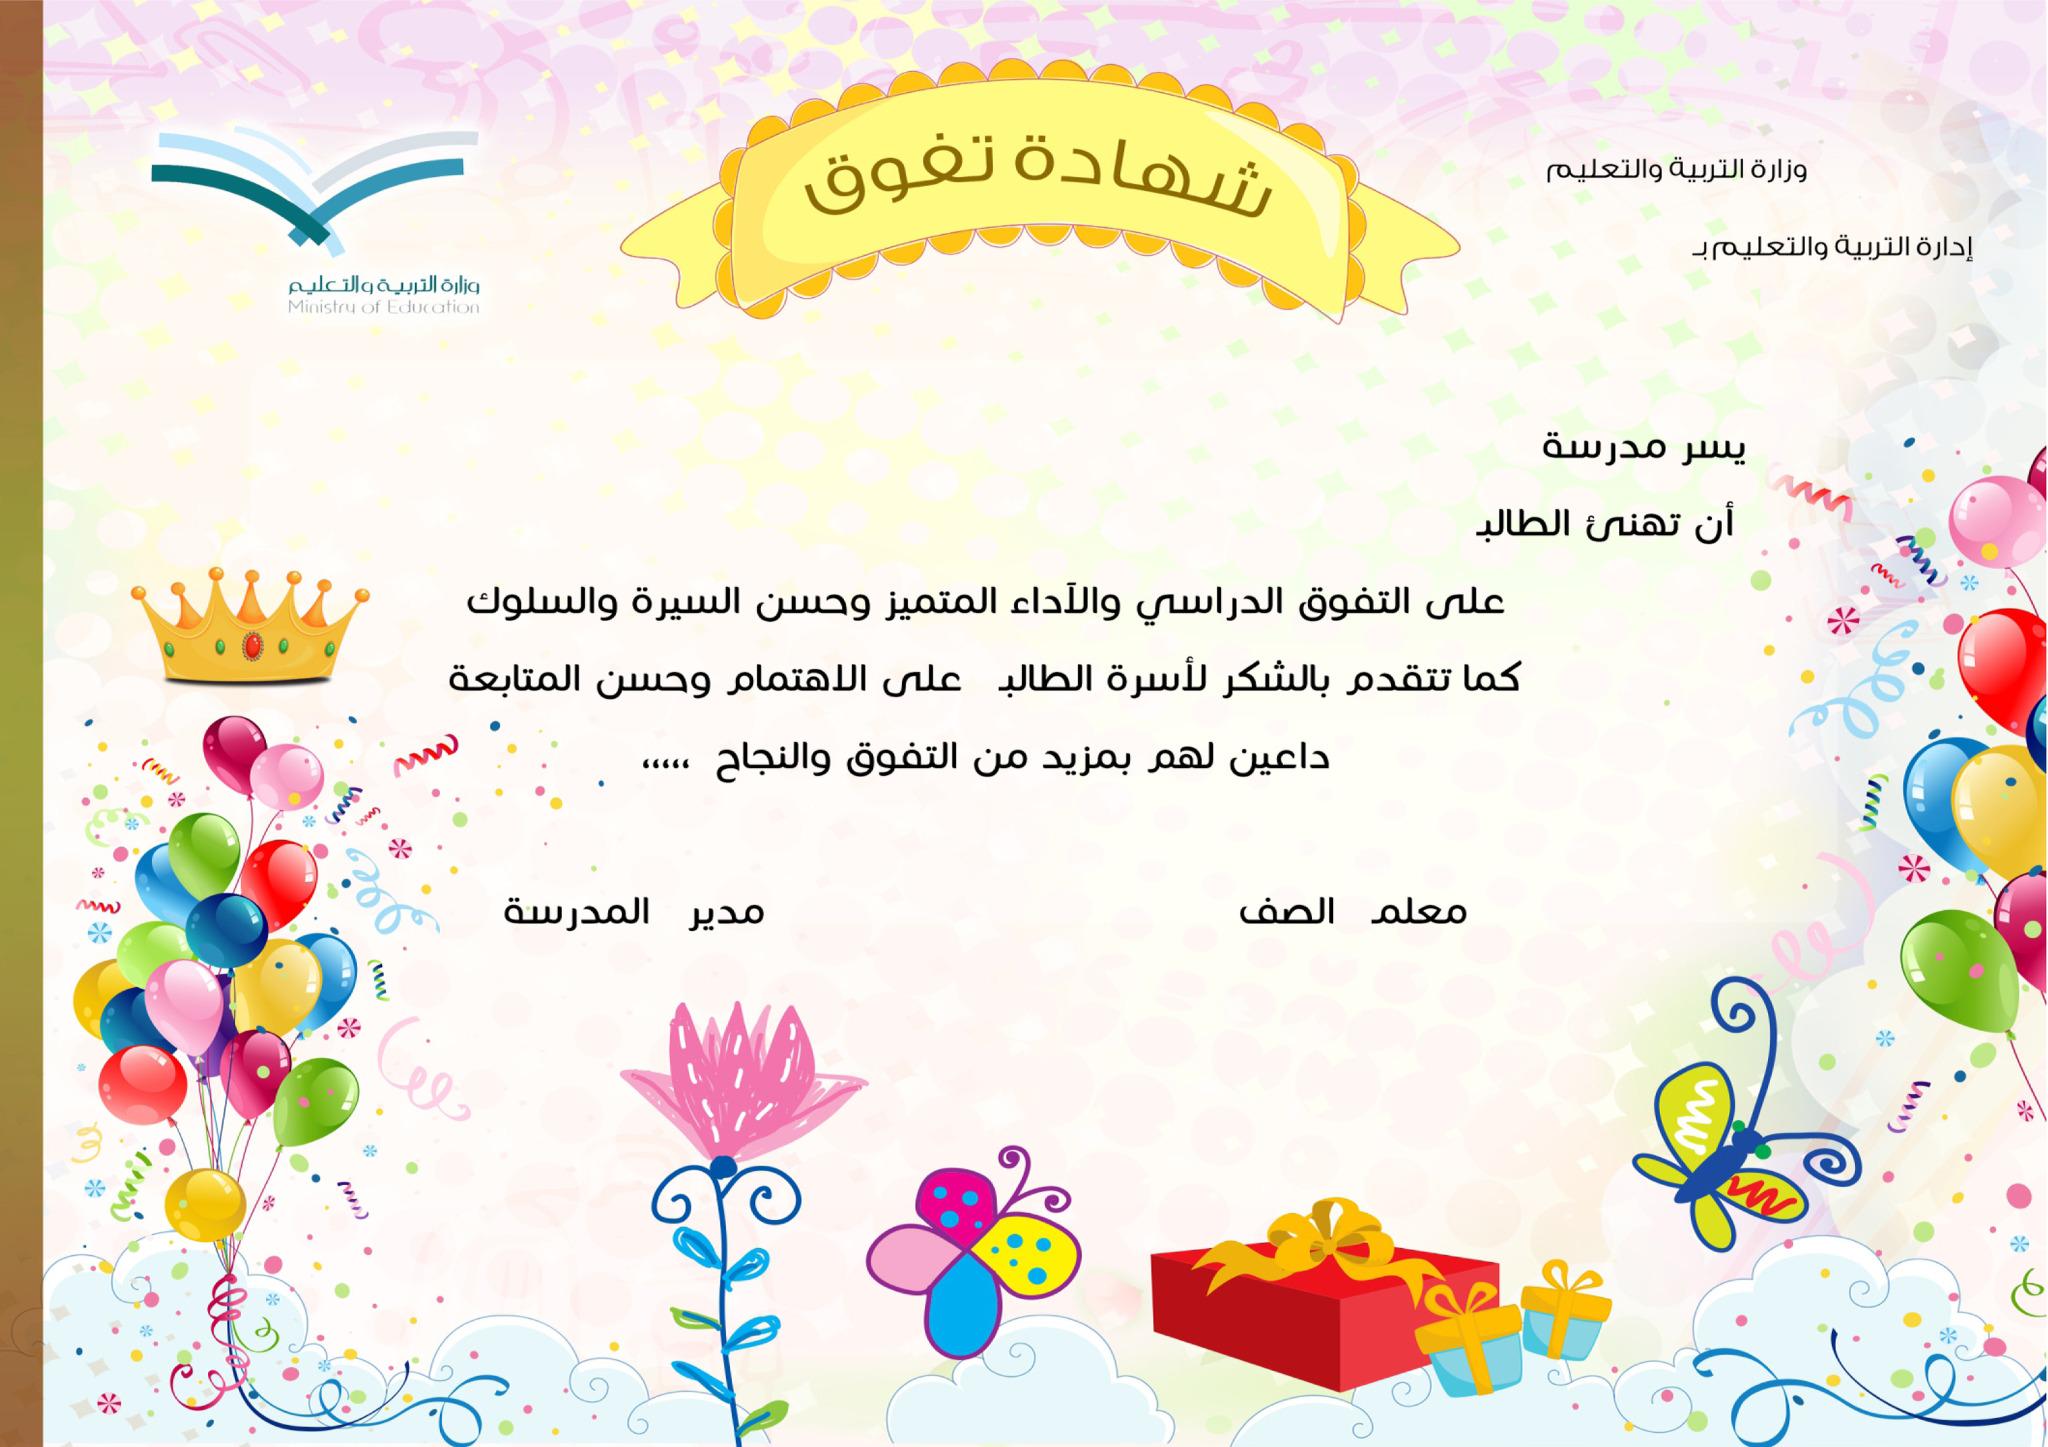 شهادة تقدير للاطفال جاهزة للكتابة عليها شهادات تهنئة للاطفال بالعربي